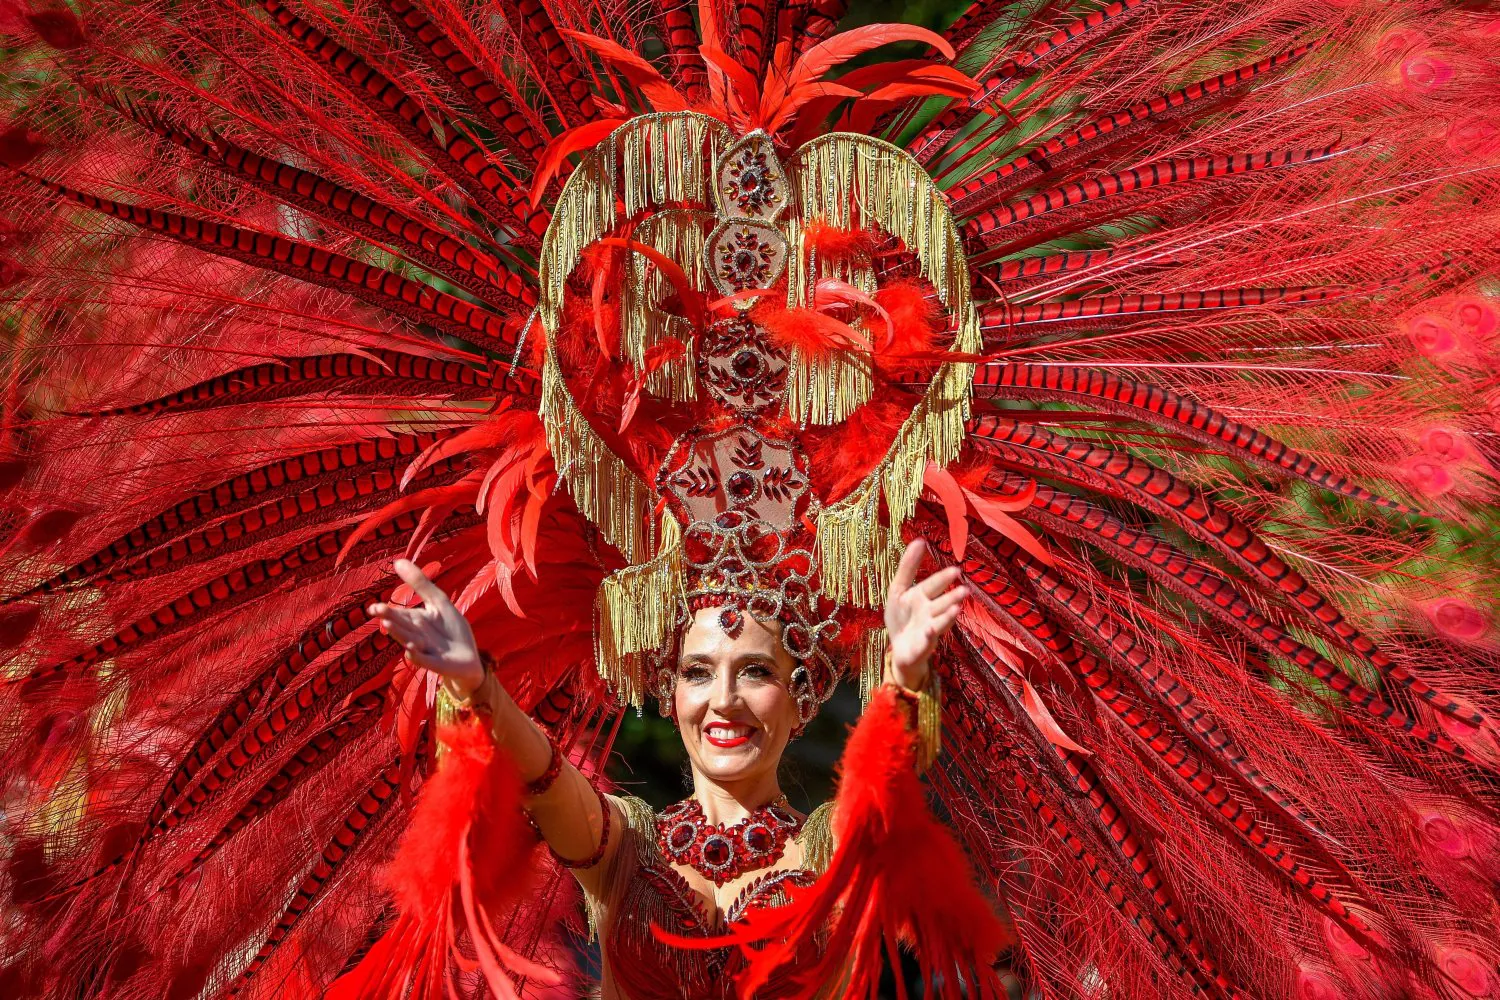 Un miembro del grupo español "Red Passion" (lit. Pasión Roja) participa en la 50 edición del Festival de las Flores de Debrecen (Hungría).